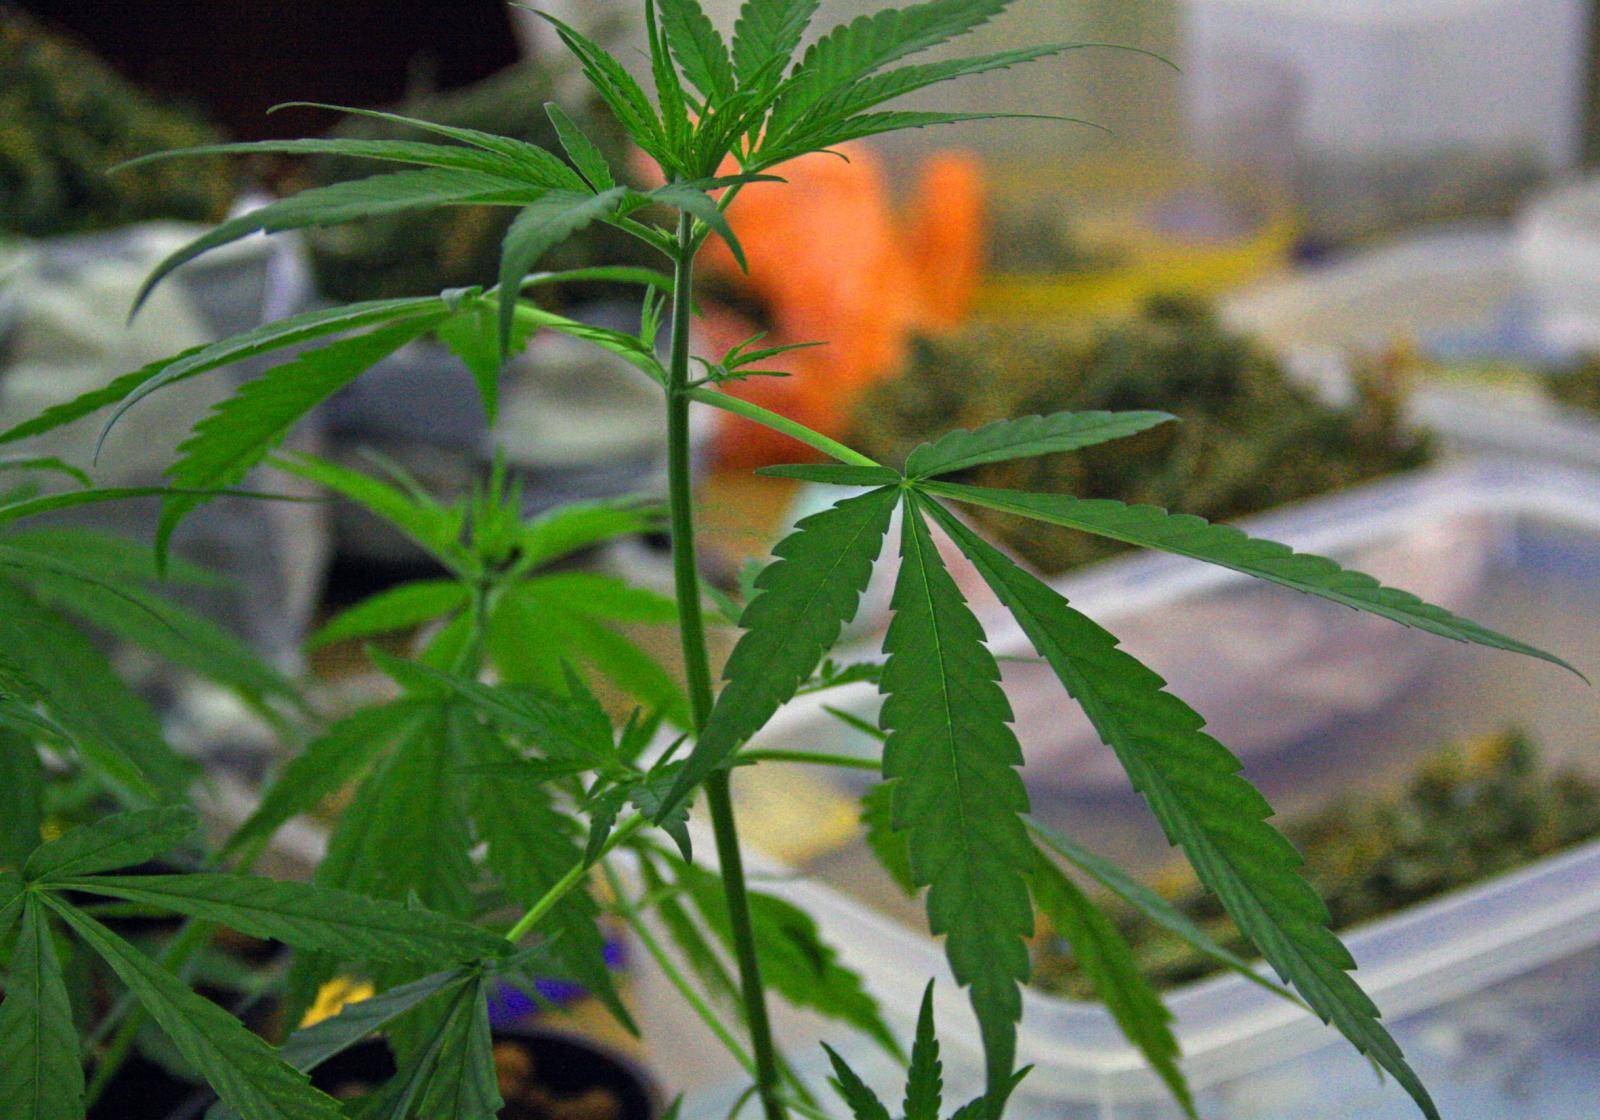 U stanu su uzgajali marihuanu: Pronašli su im 18 stabljika...